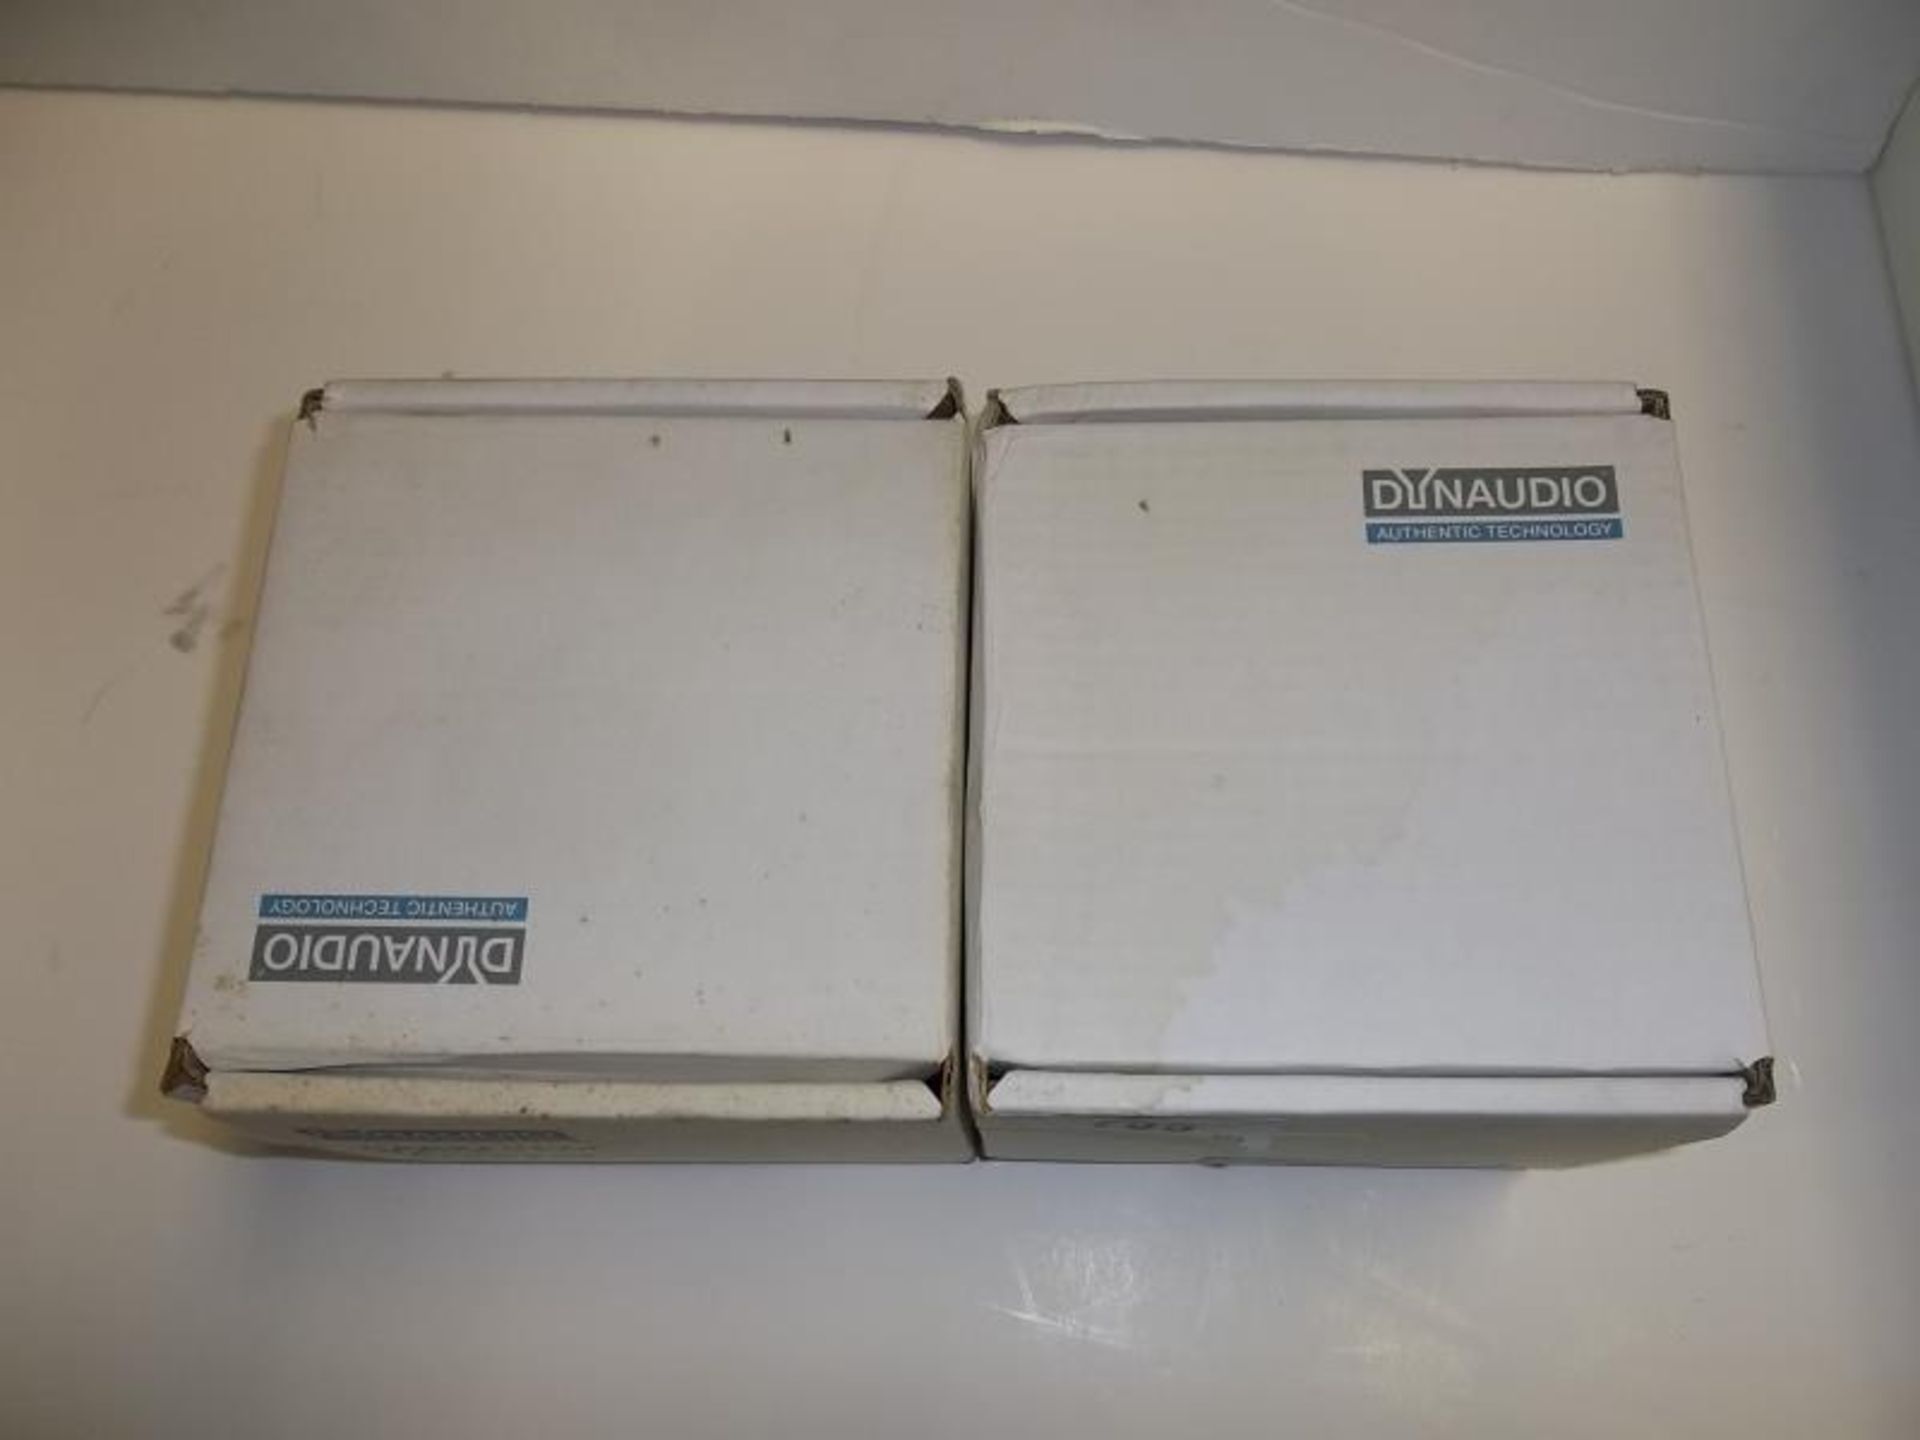 2 Dynaudio D-76AF, item no 82605, 3" speakers, in Dynaudio boxes